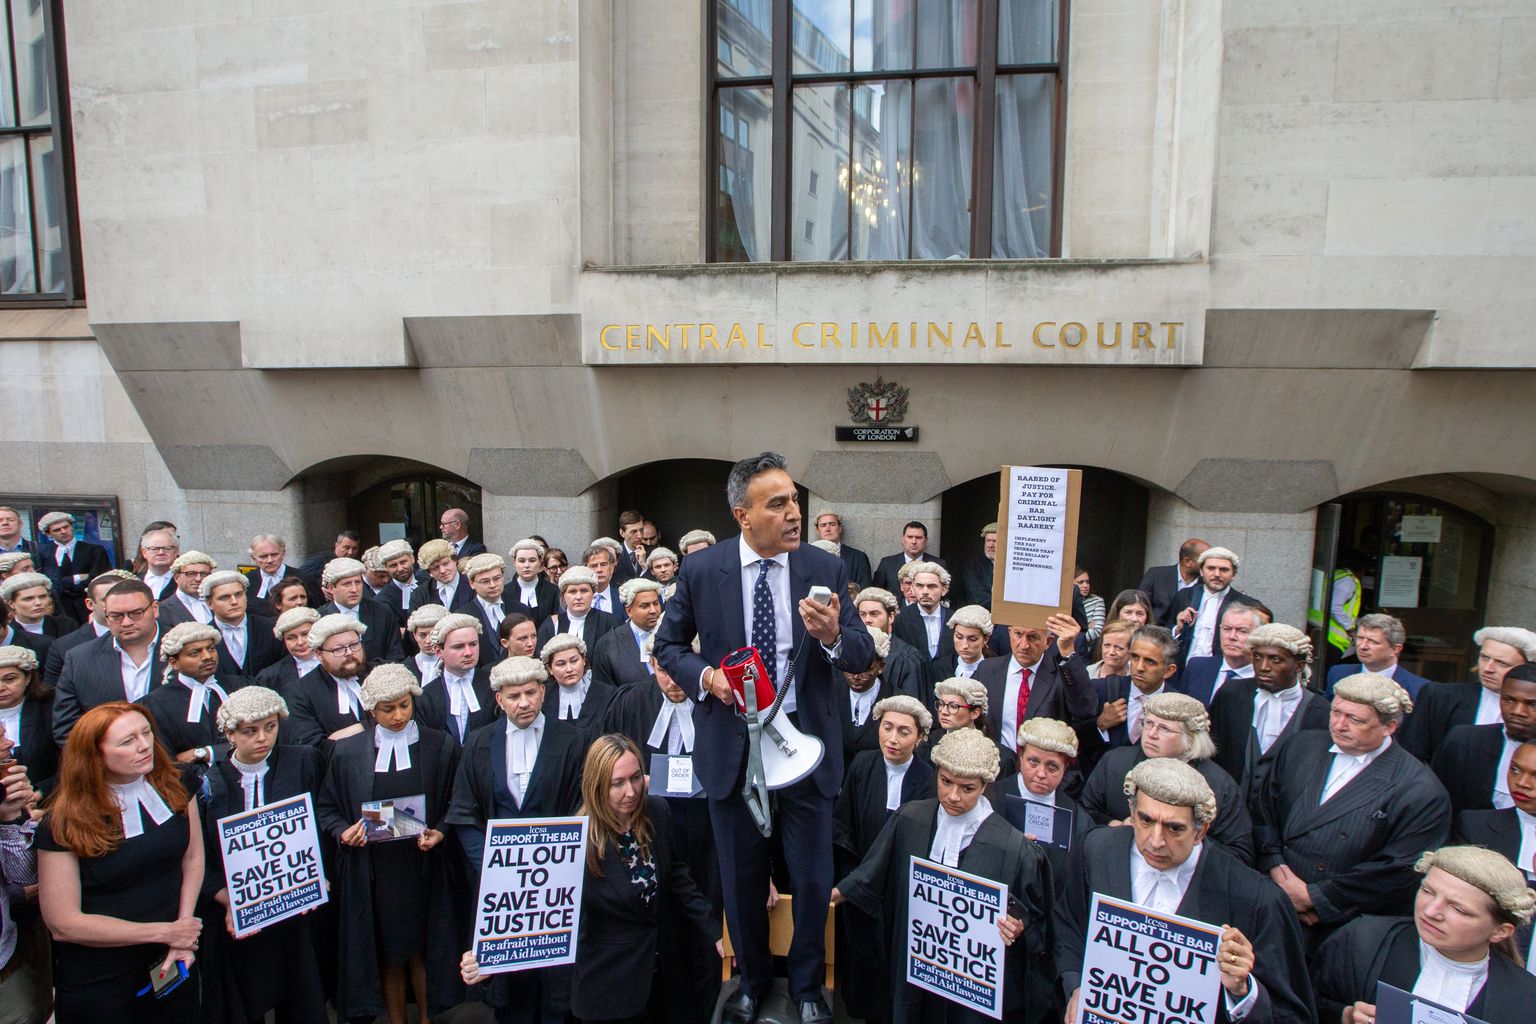 Advokaadid 27. juunil 2022 Londonis keskkriminaalkohtu Old Bailey ees streigiteed jalge alla võtmas.